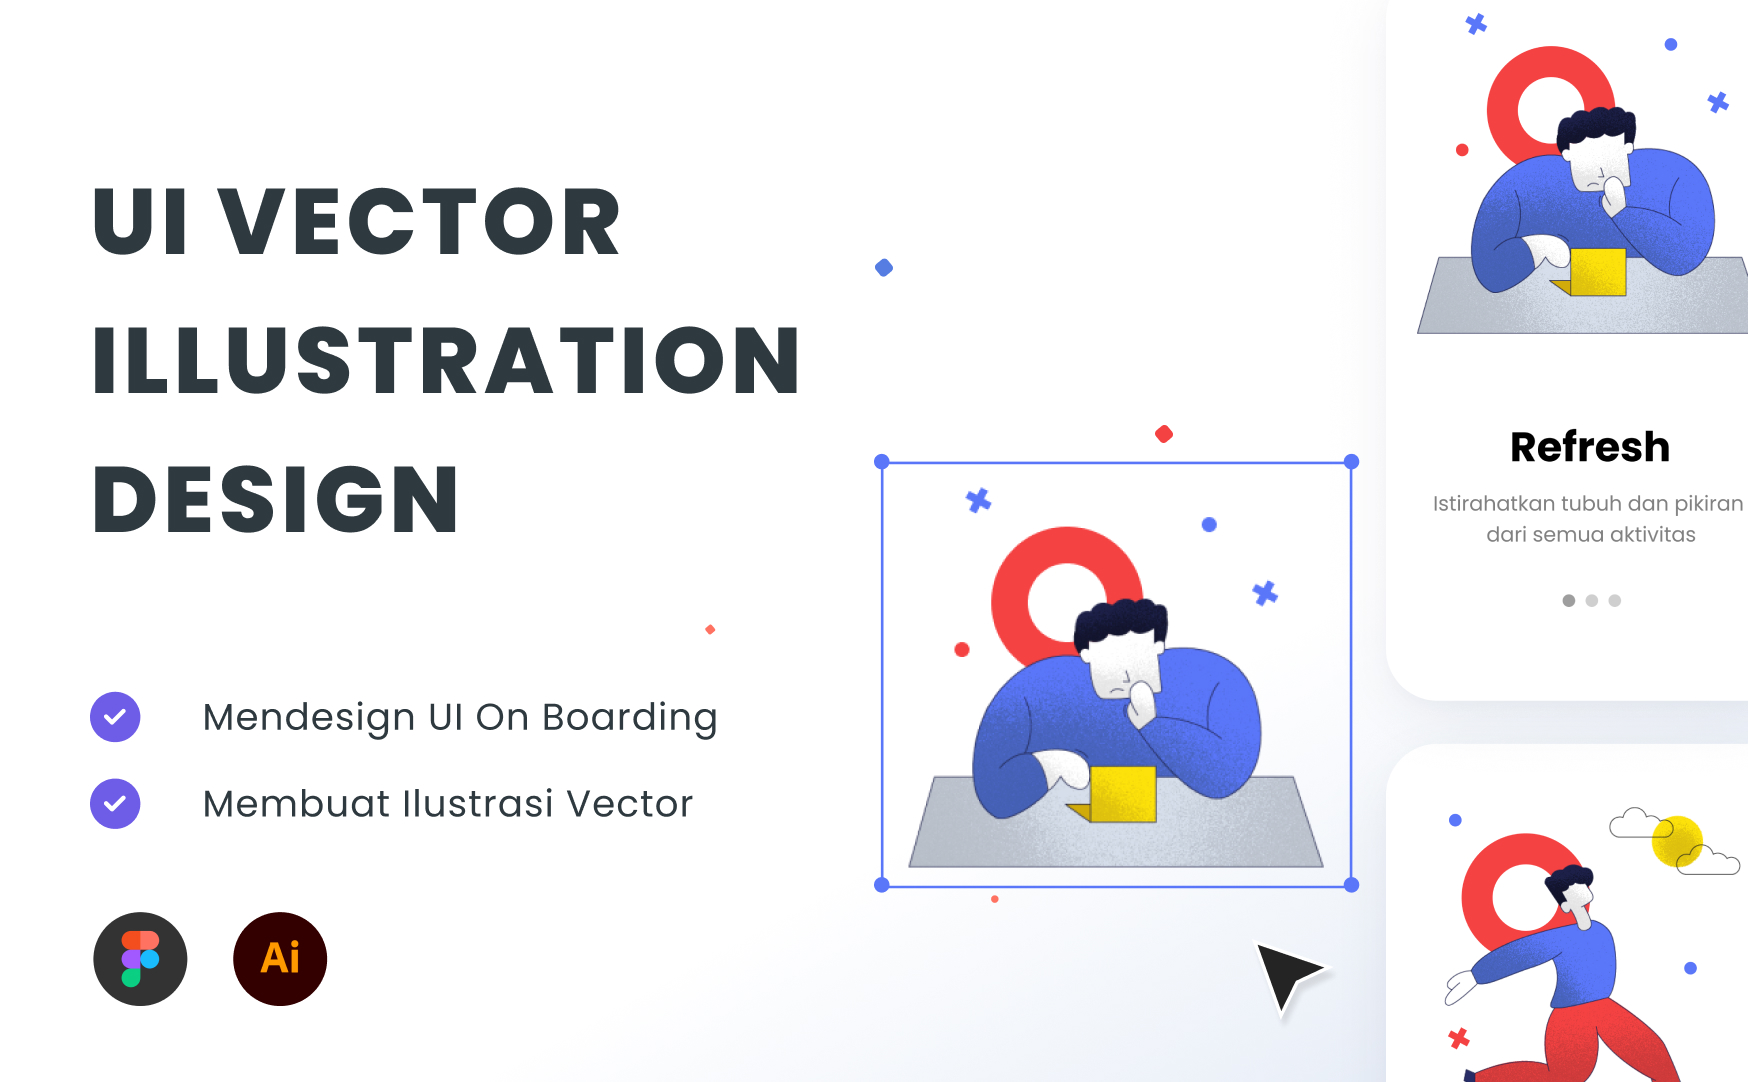 Kelas UI Vector Illustration Design di BuildWith Angga